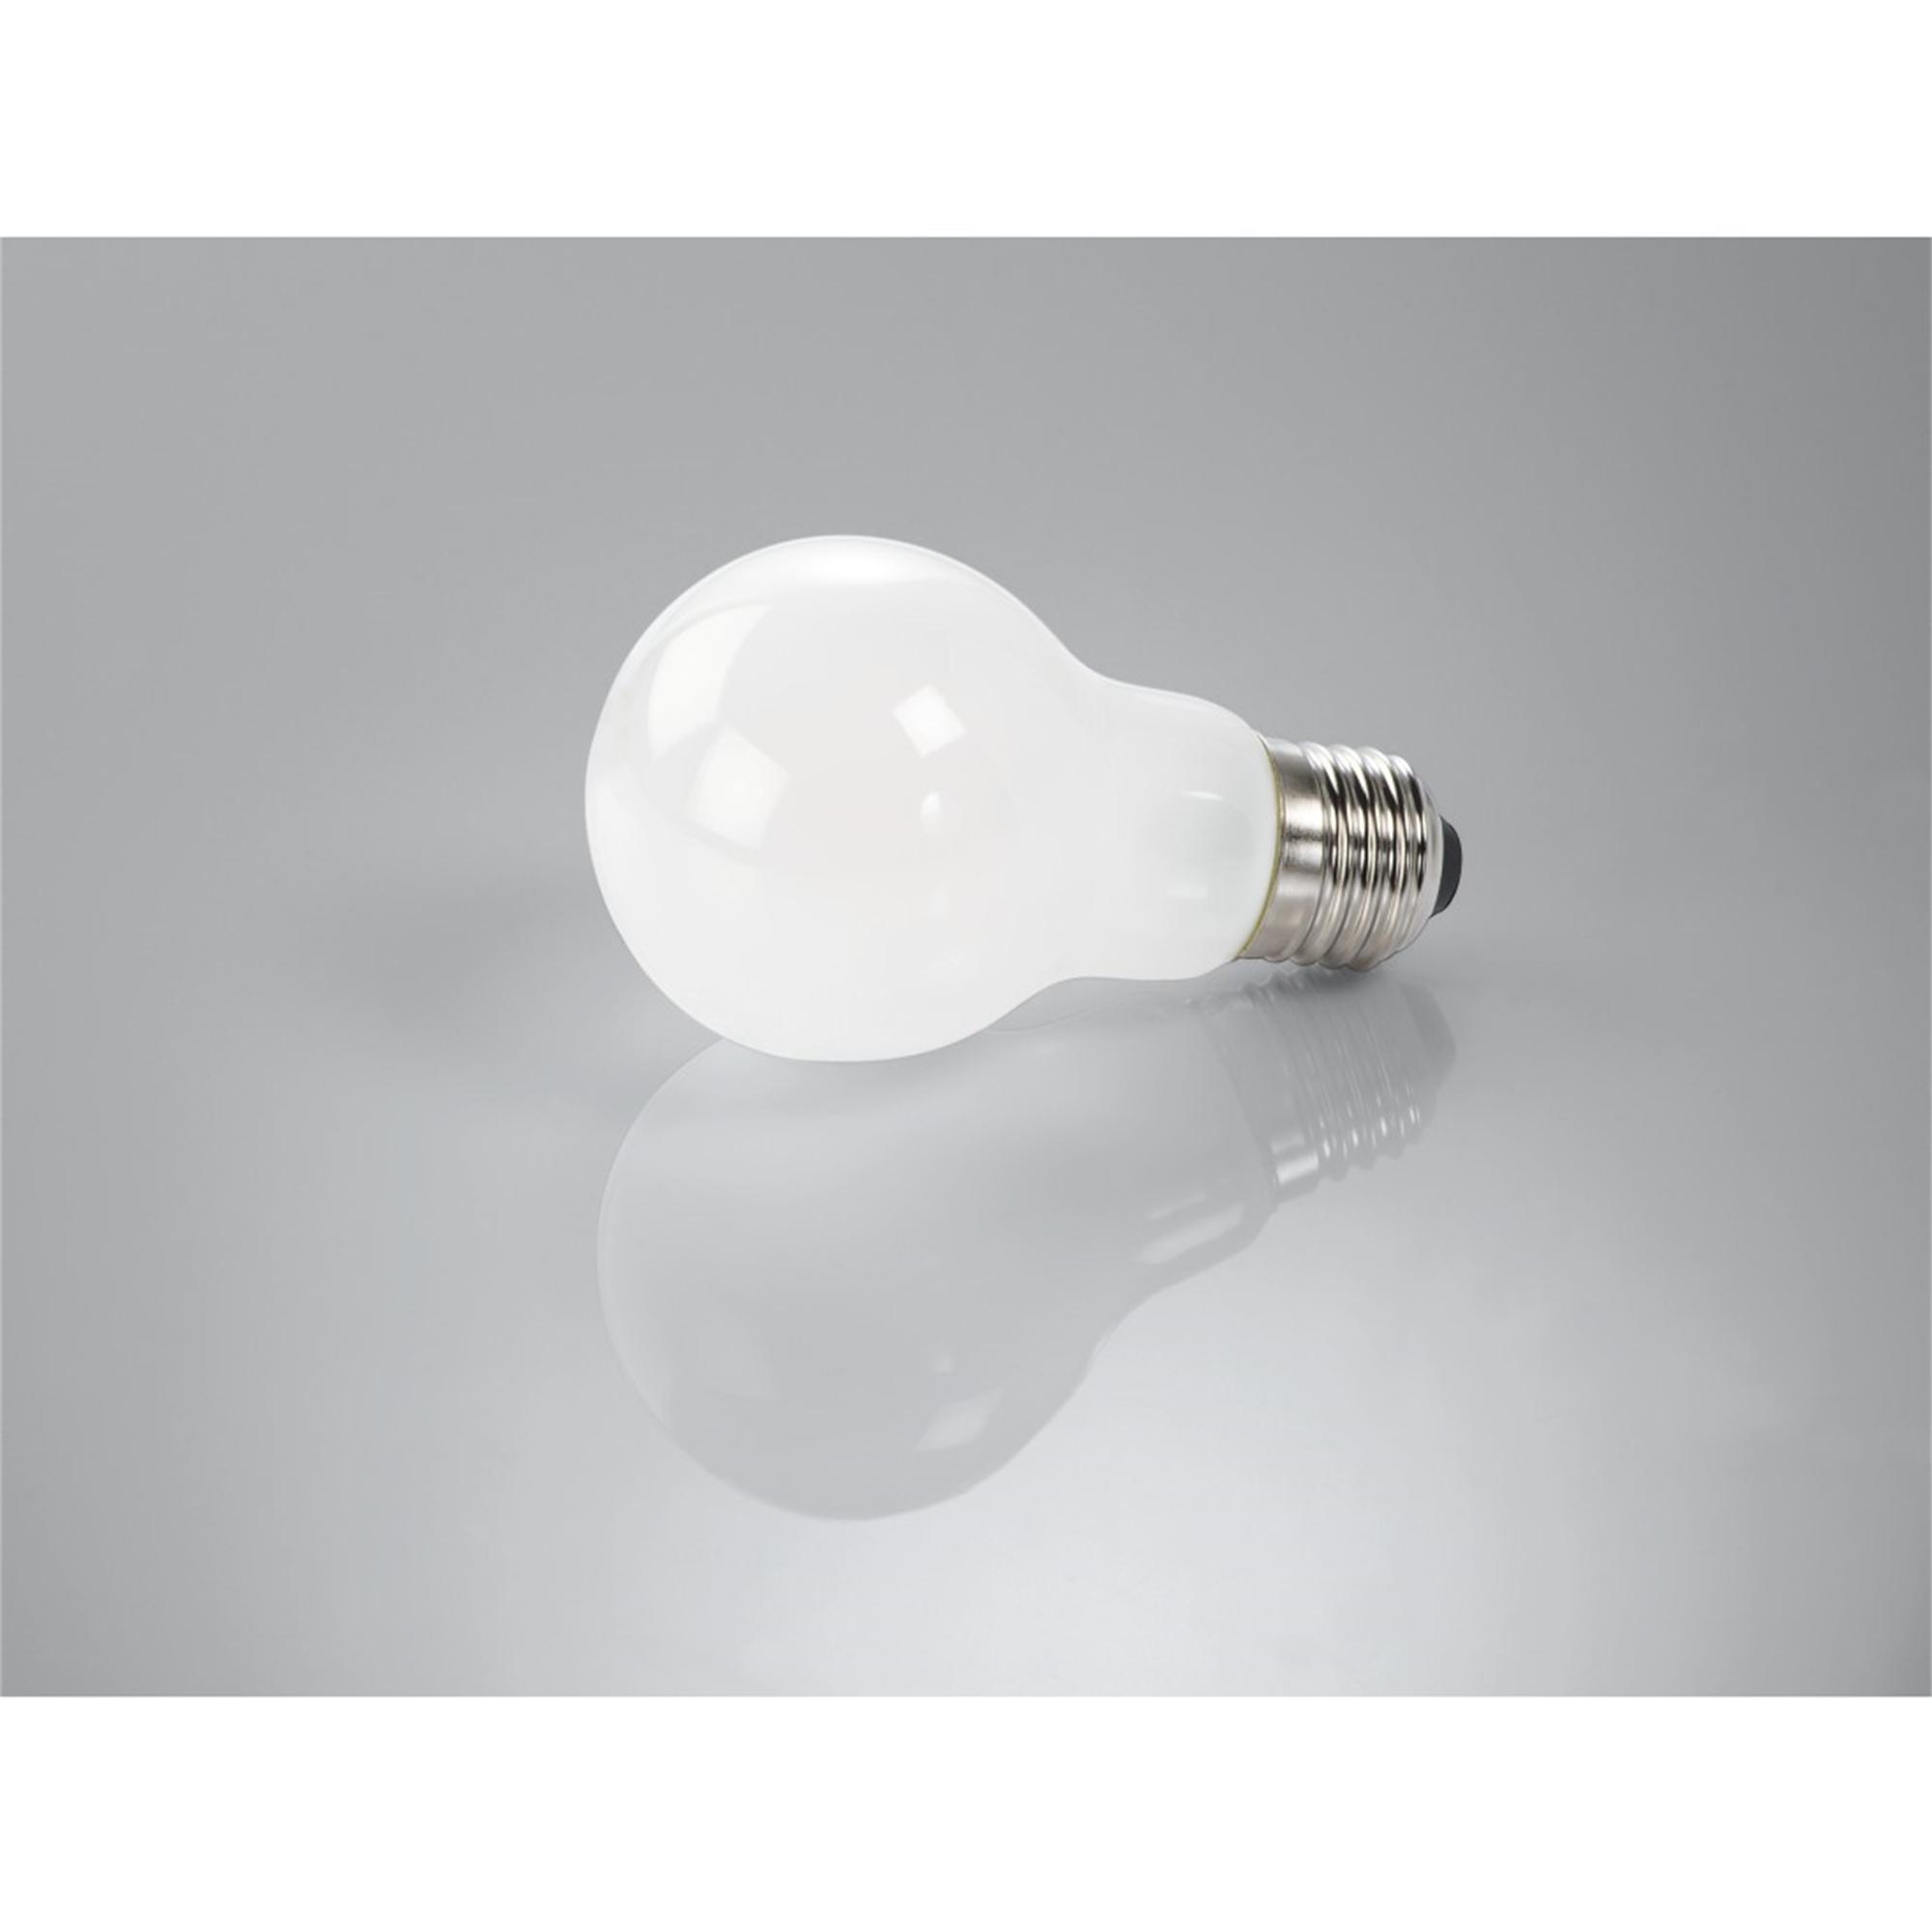 LED-Lampe E27 Warmweiß E27, ersetzt 806lm XAVAX 60W